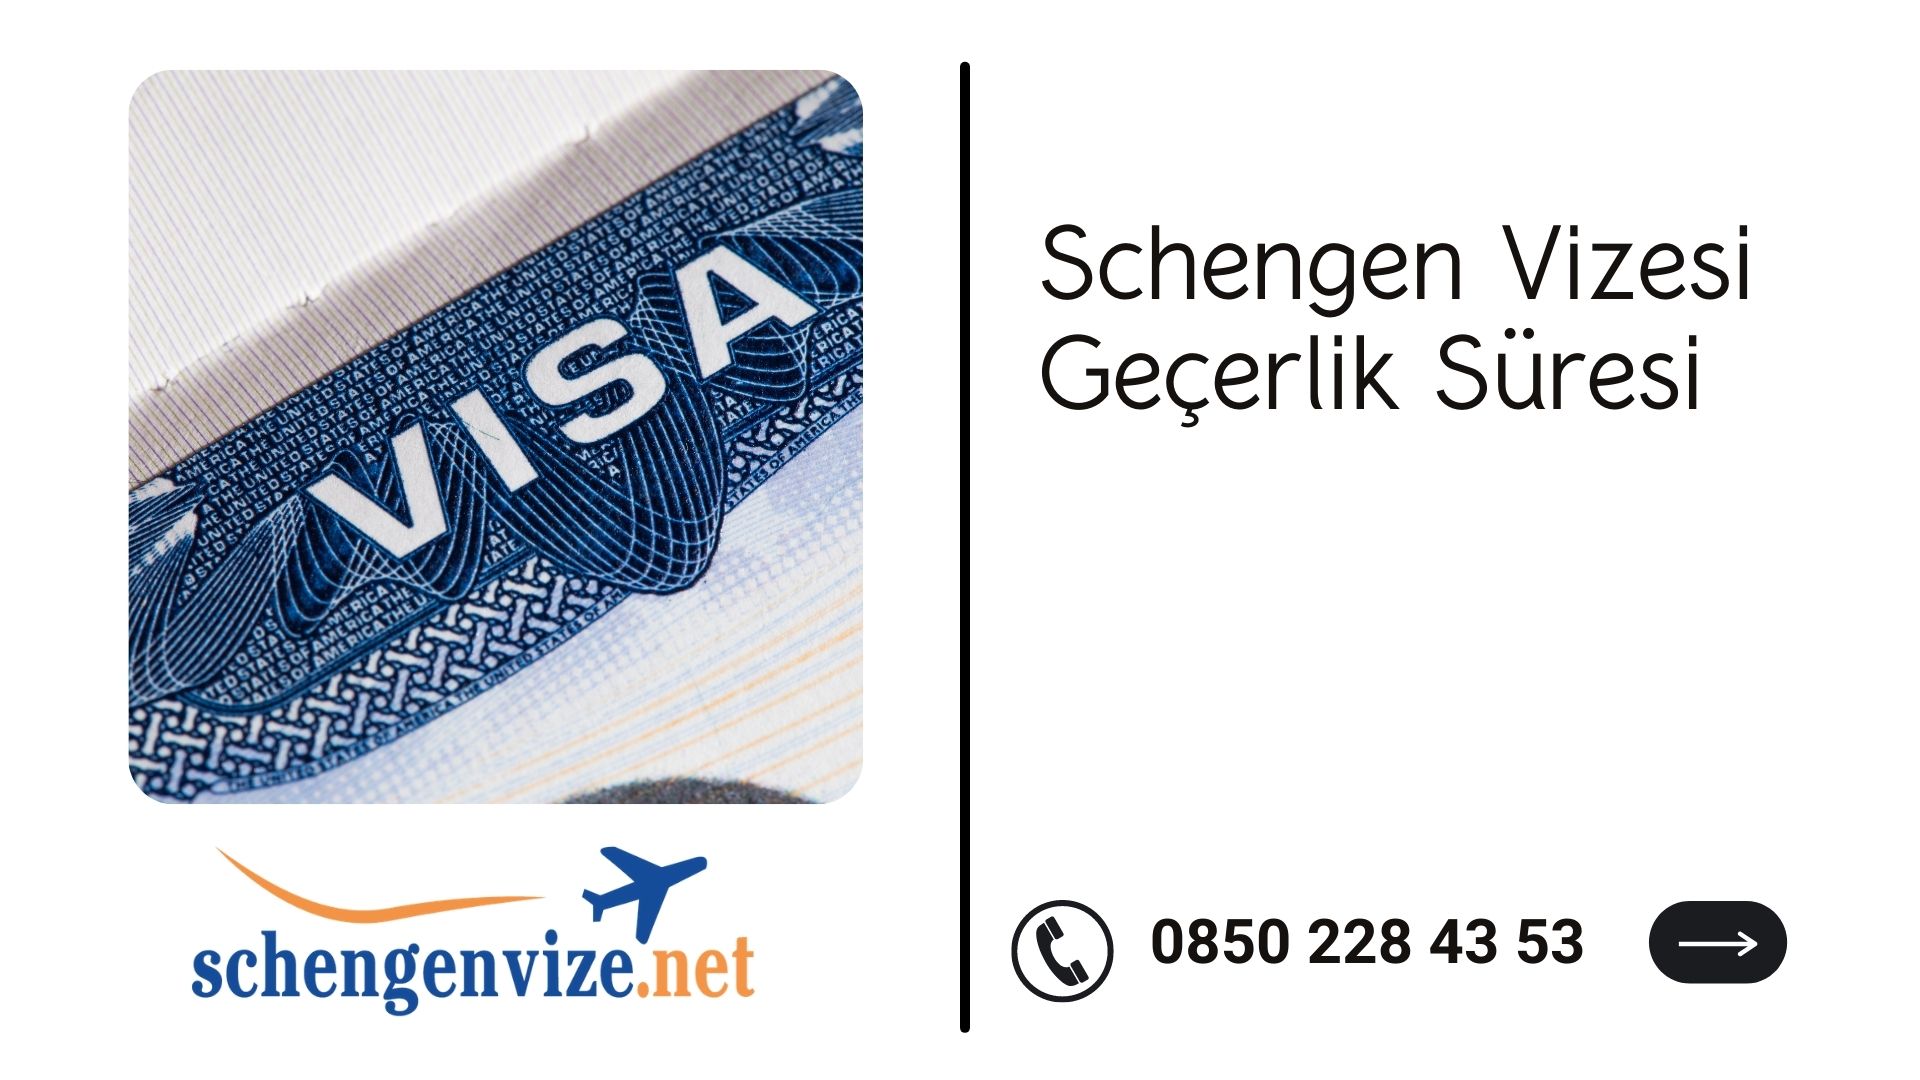 Schengen Vizesi Geçerlik Süresi